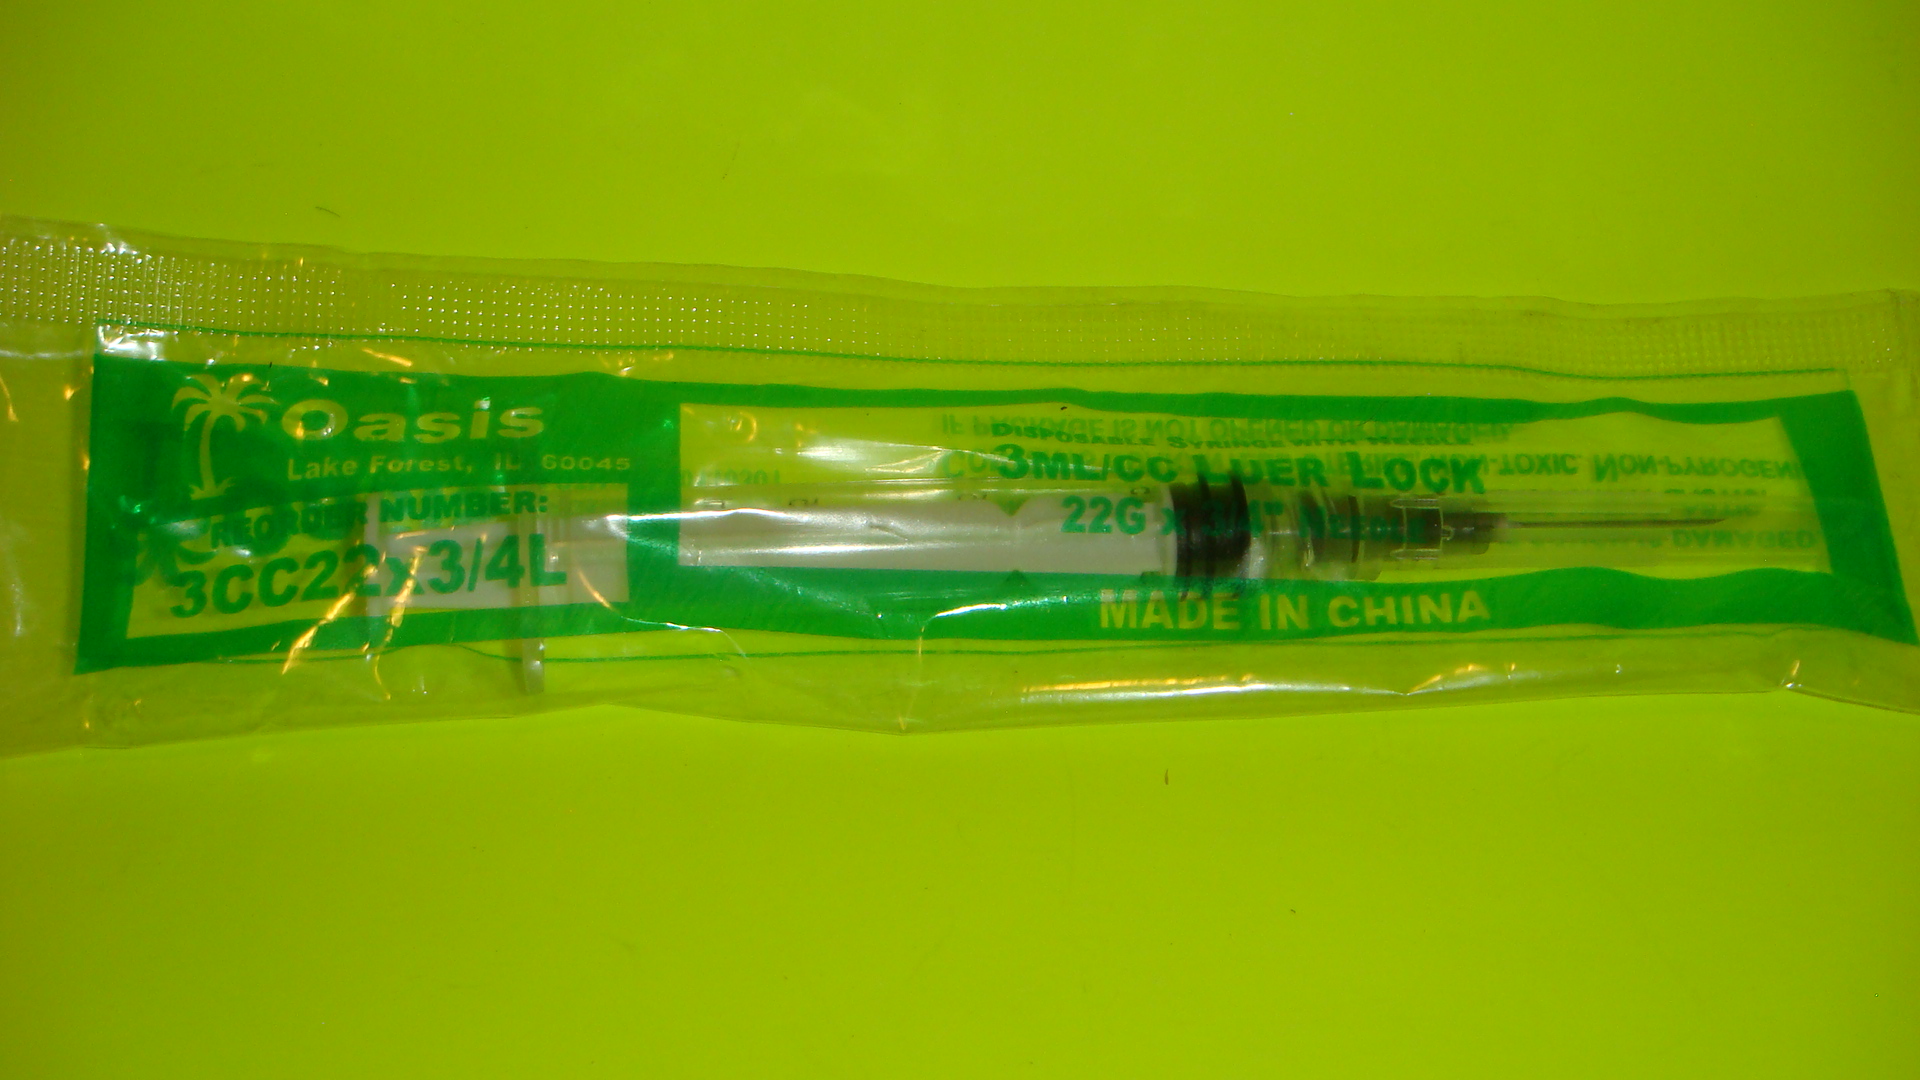 3cc syringe with 22 g needle